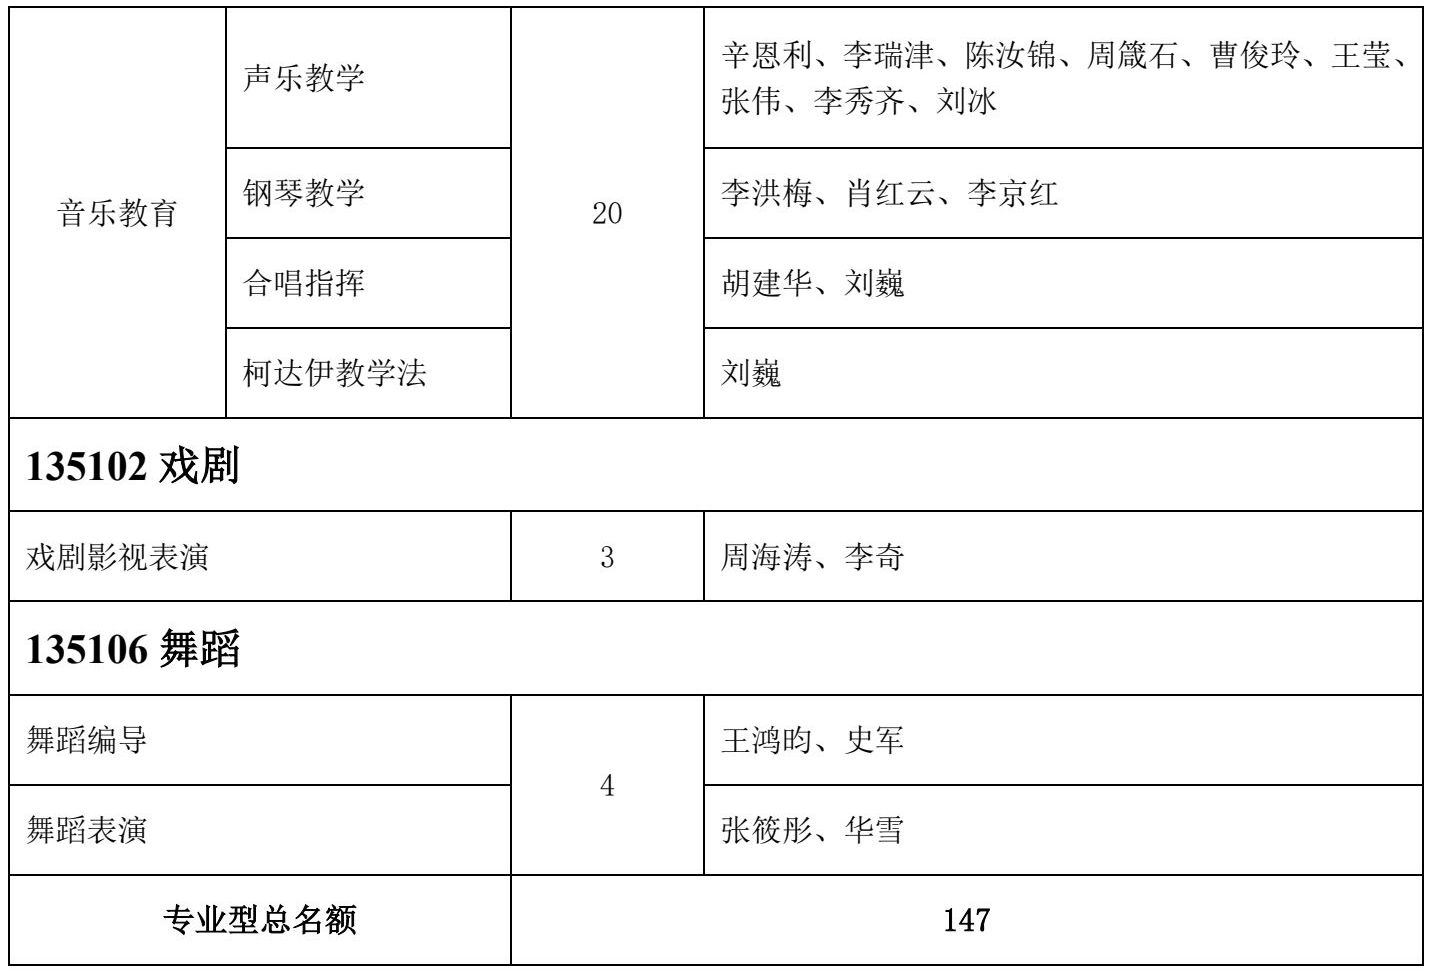 2022年天津音樂學院專業型碩士學位研究生招生簡章